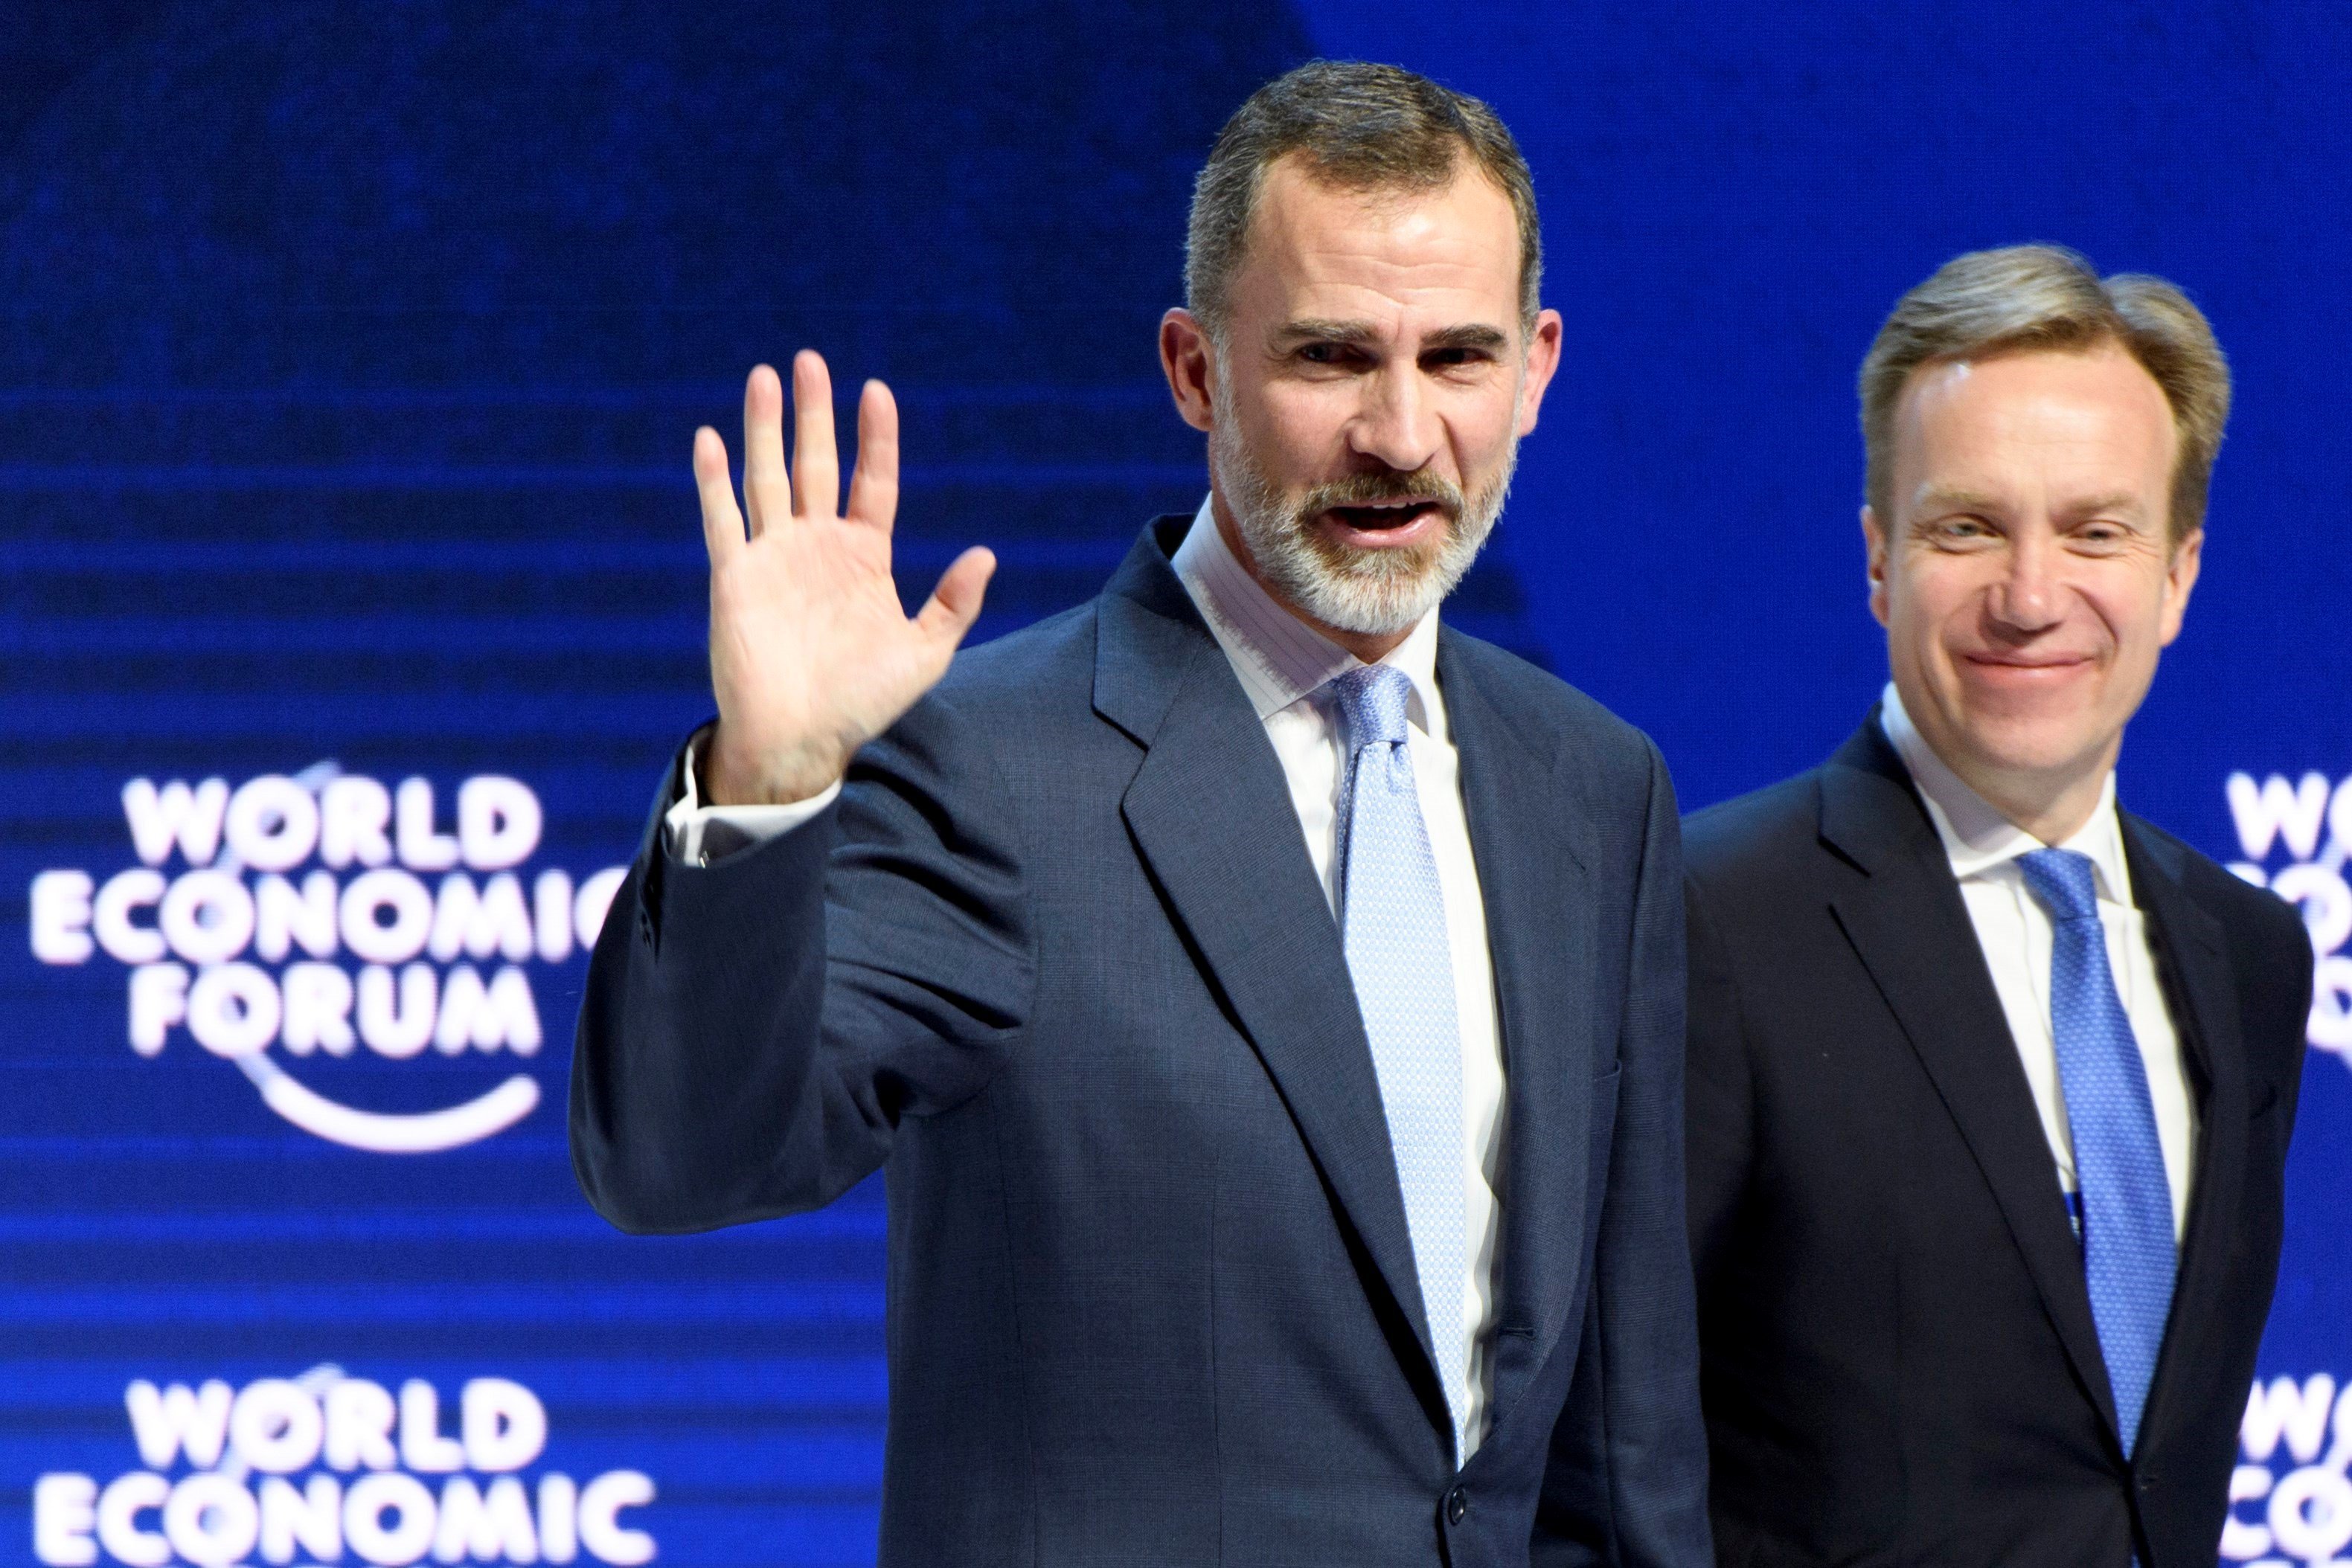 Sala-i-Martín revela que Felipe VI casi se cae al suelo en Davos